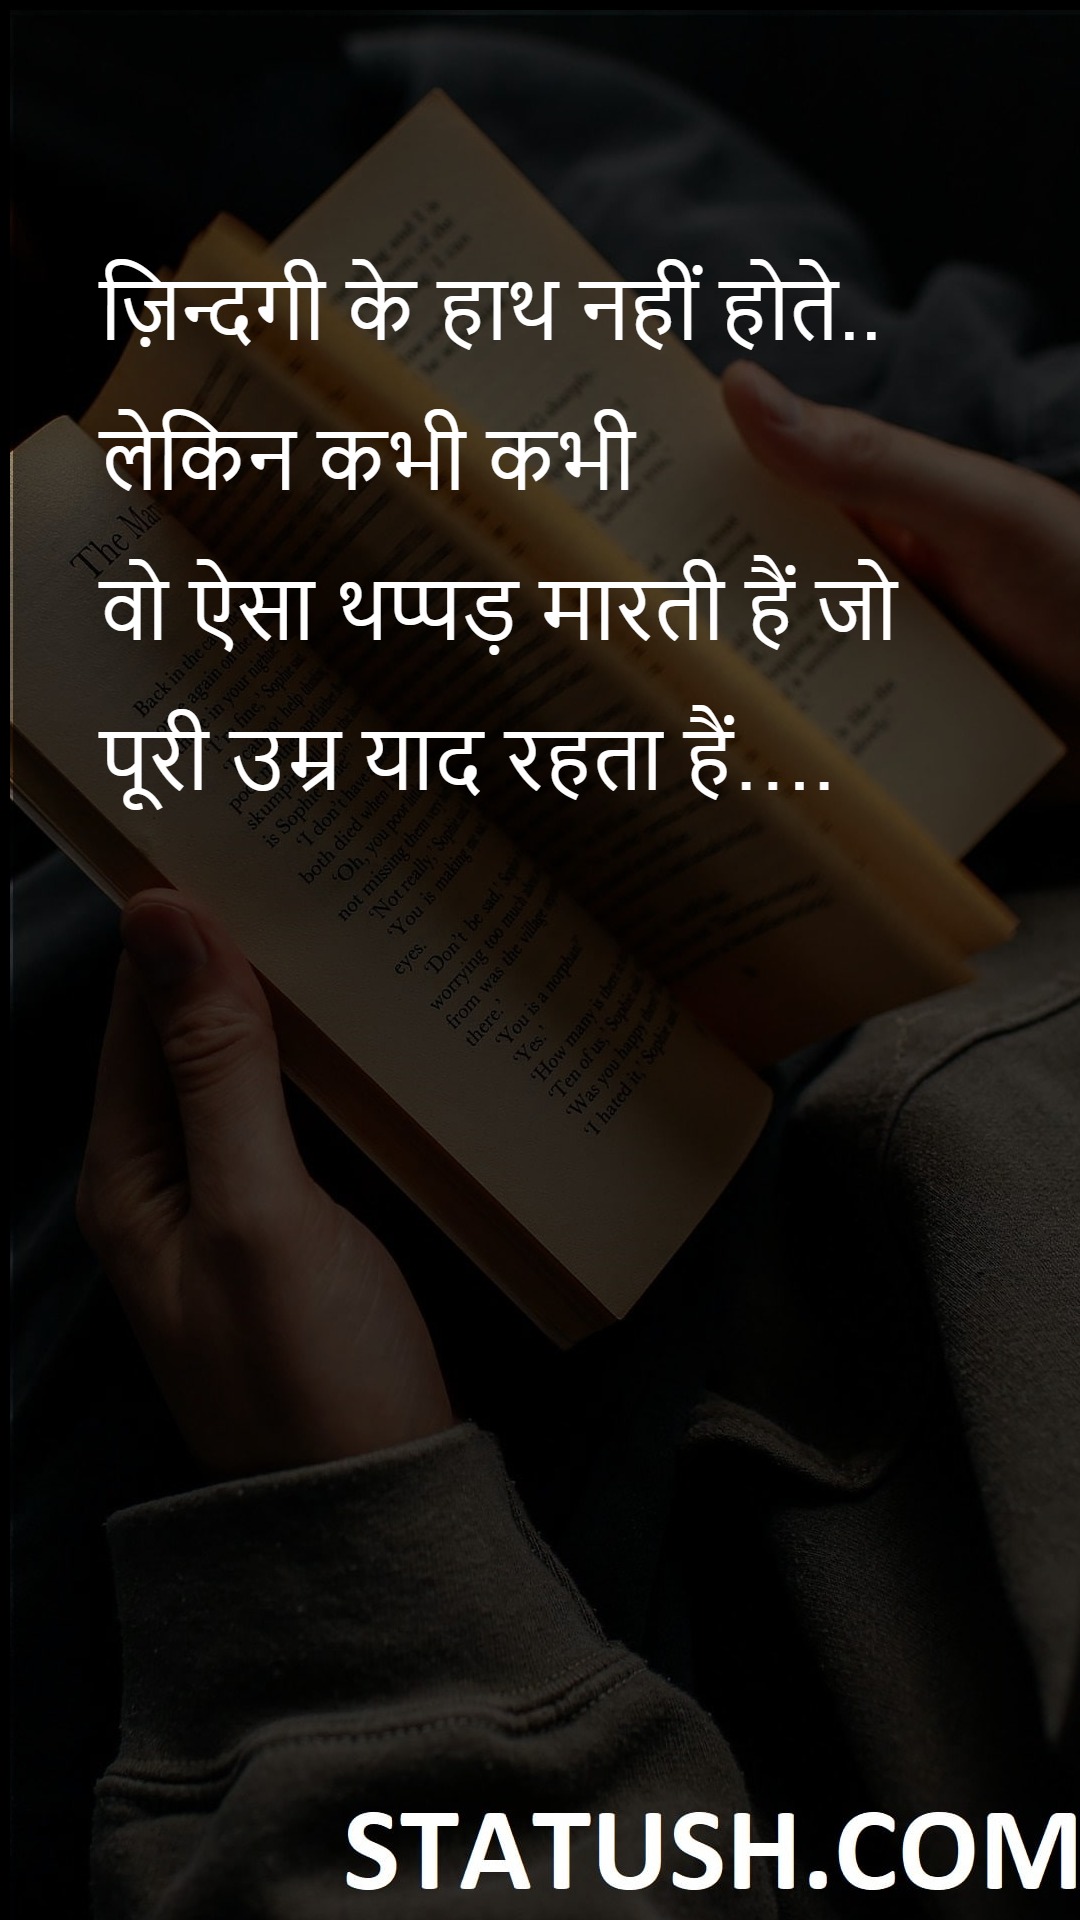 Life has no hands - Hindi Quotes at statush.com